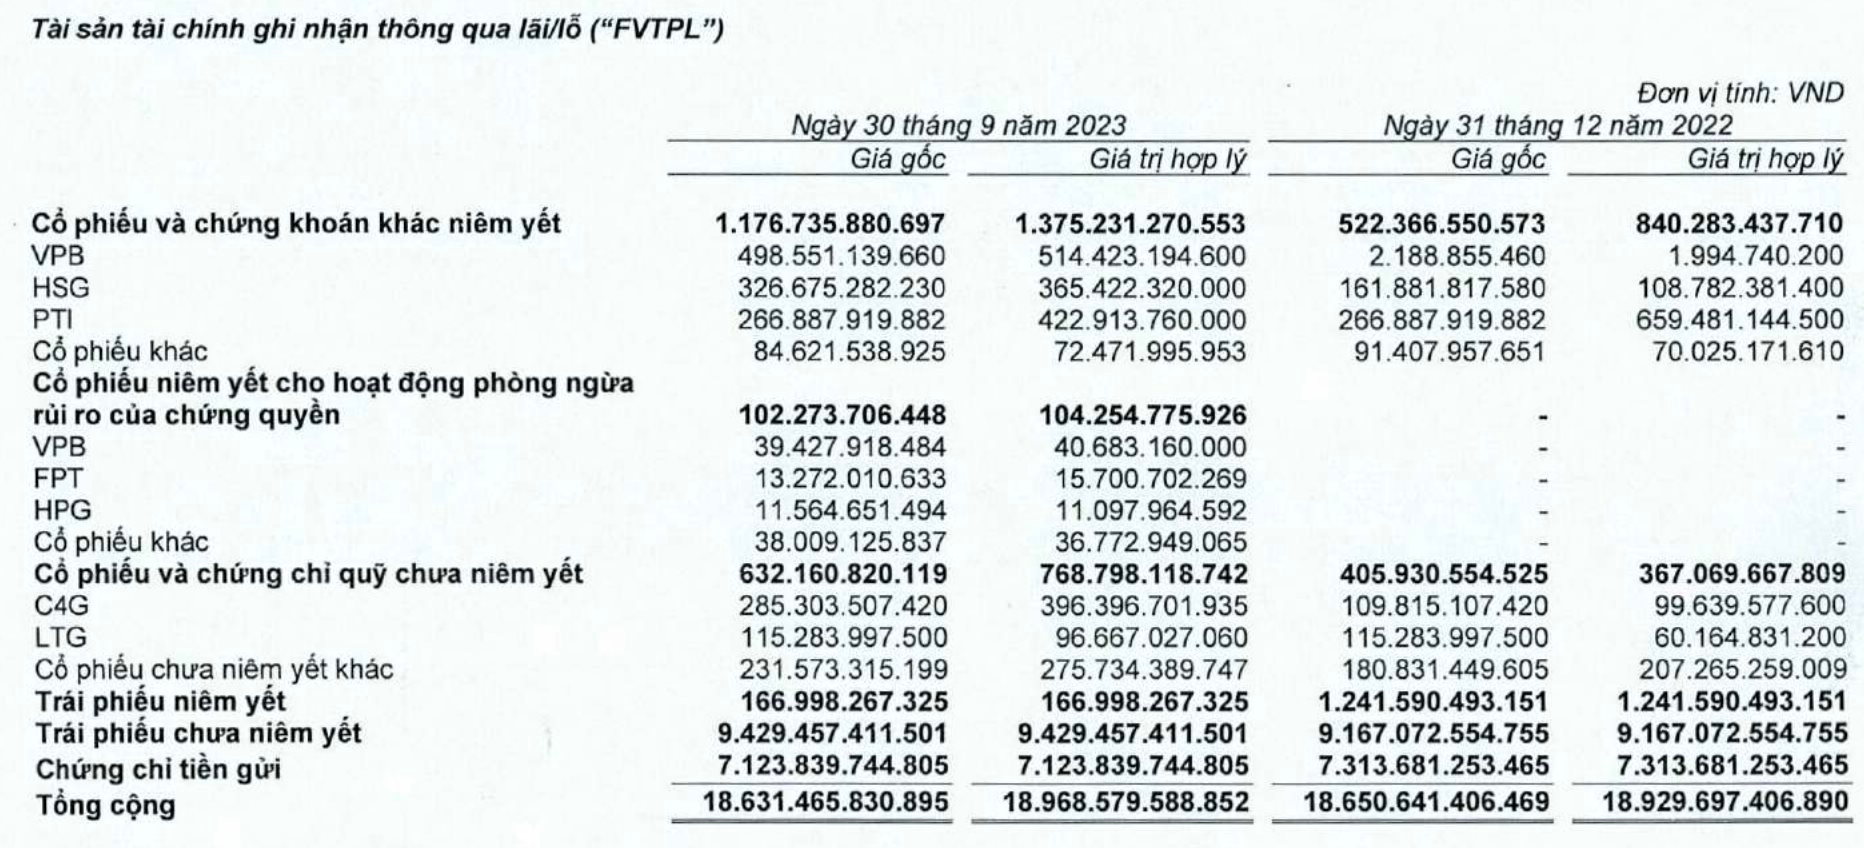 VNDirect (VND) lãi quý 3 gấp 7 lần cùng kỳ, chốt lời bớt cổ phiếu PTI, mạnh tay mua thêm VPB, HSG - Ảnh 2.